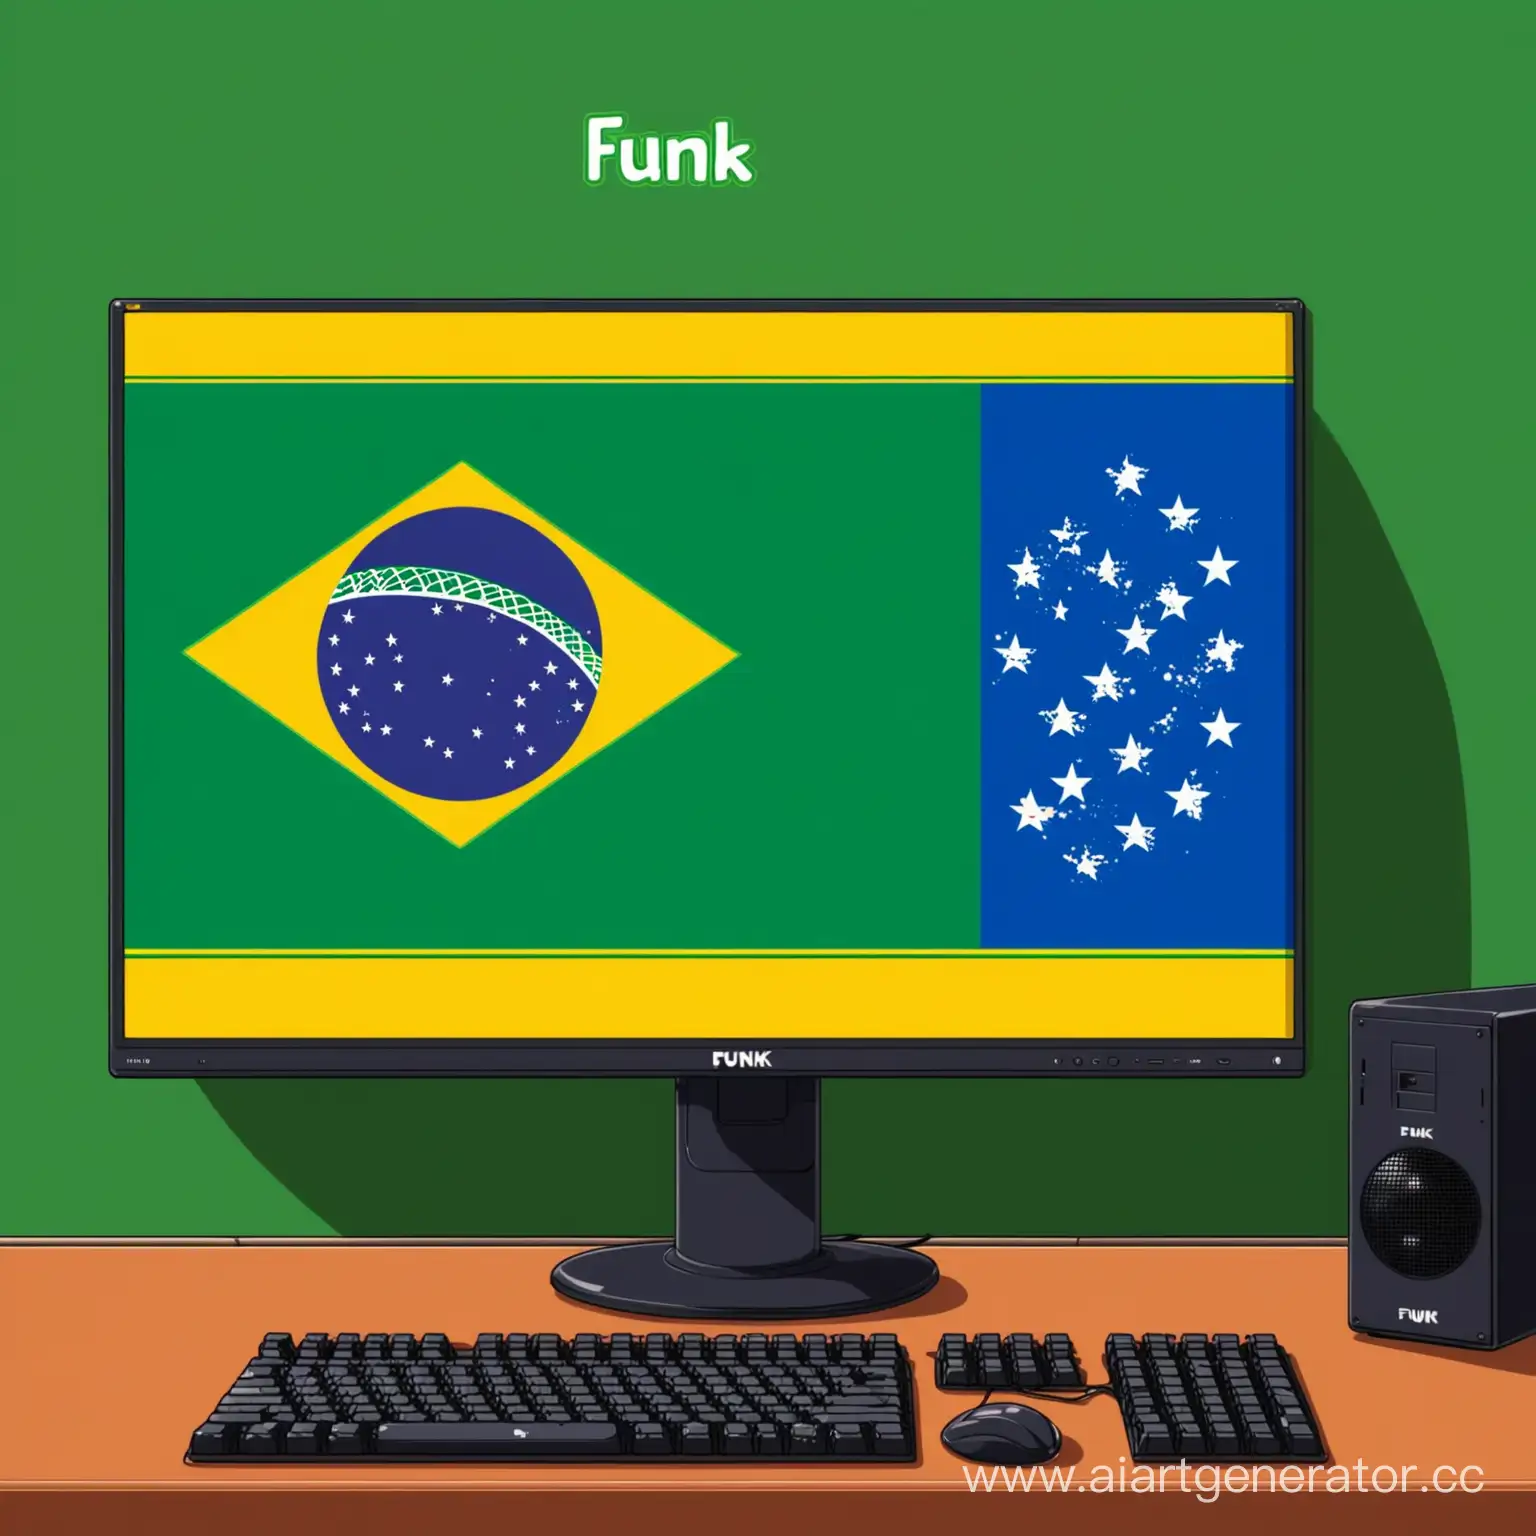 Задний фон аниме ПК с экраном, в экране: бразильский флаг, и снизу экрана подпись: FUNK